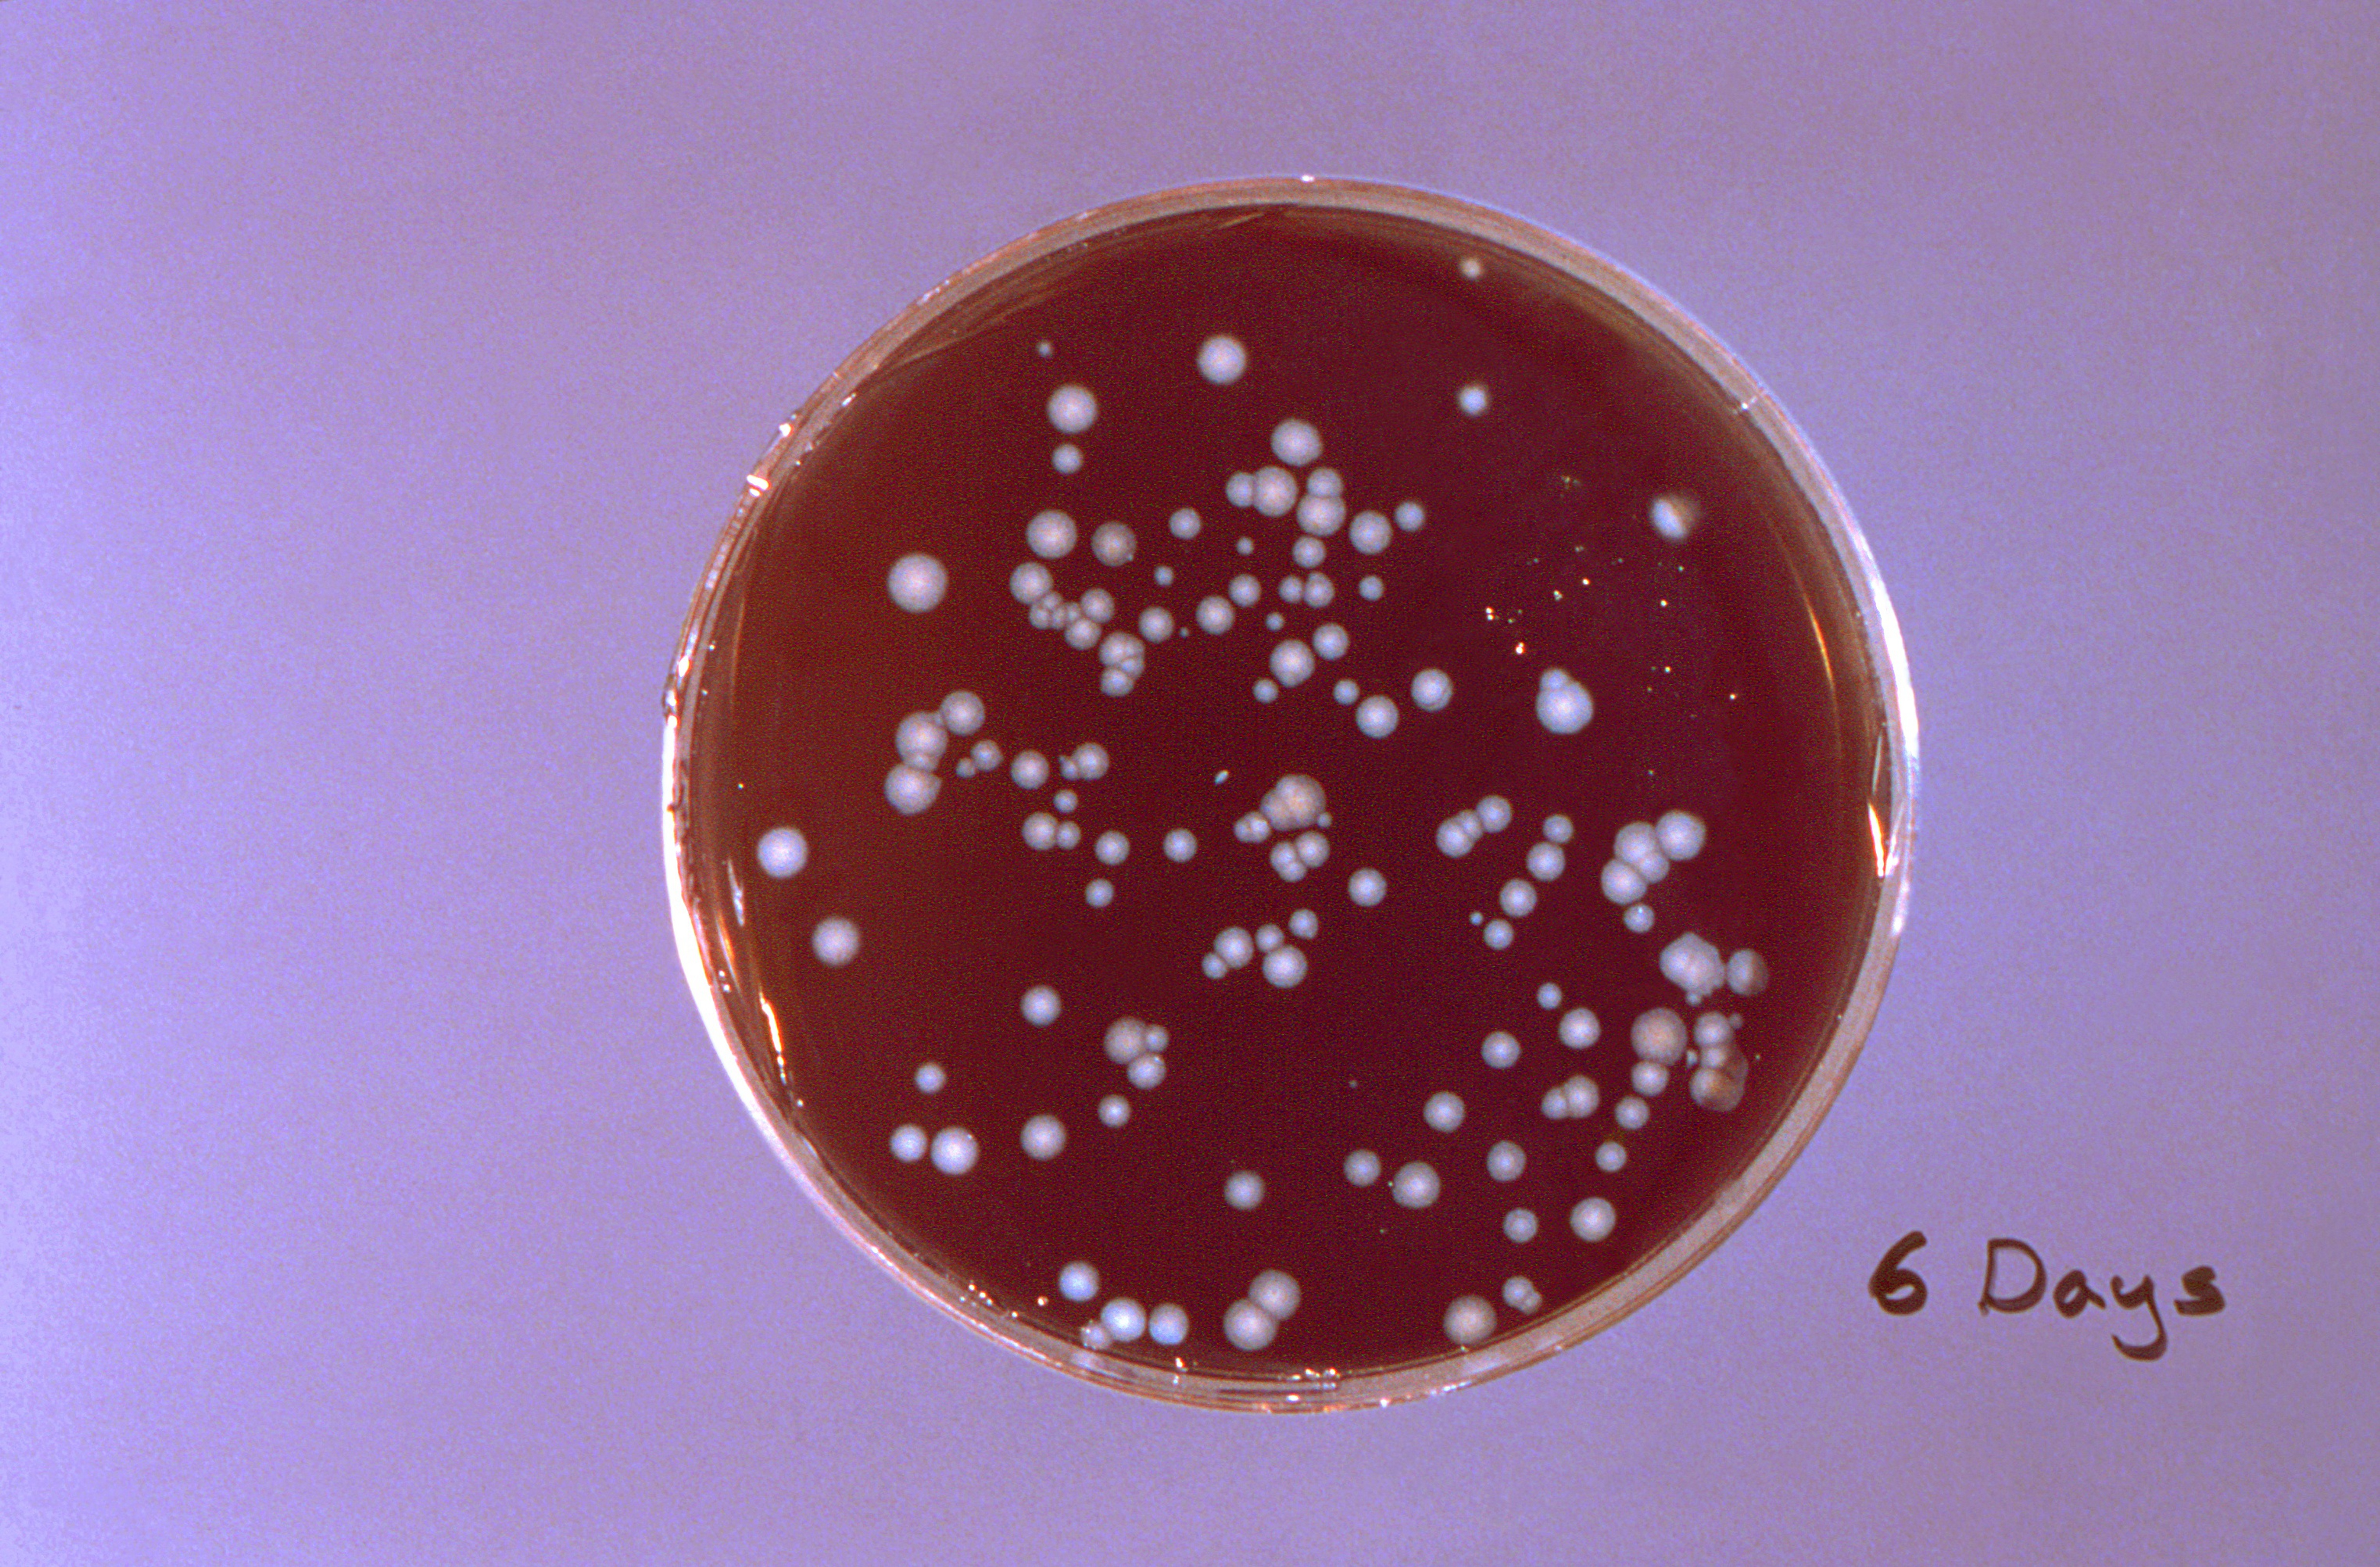 Las nuevas bacterias y virus pueden generar graves enfermedades (Photo by Smith Collection/Gado/Getty Images).